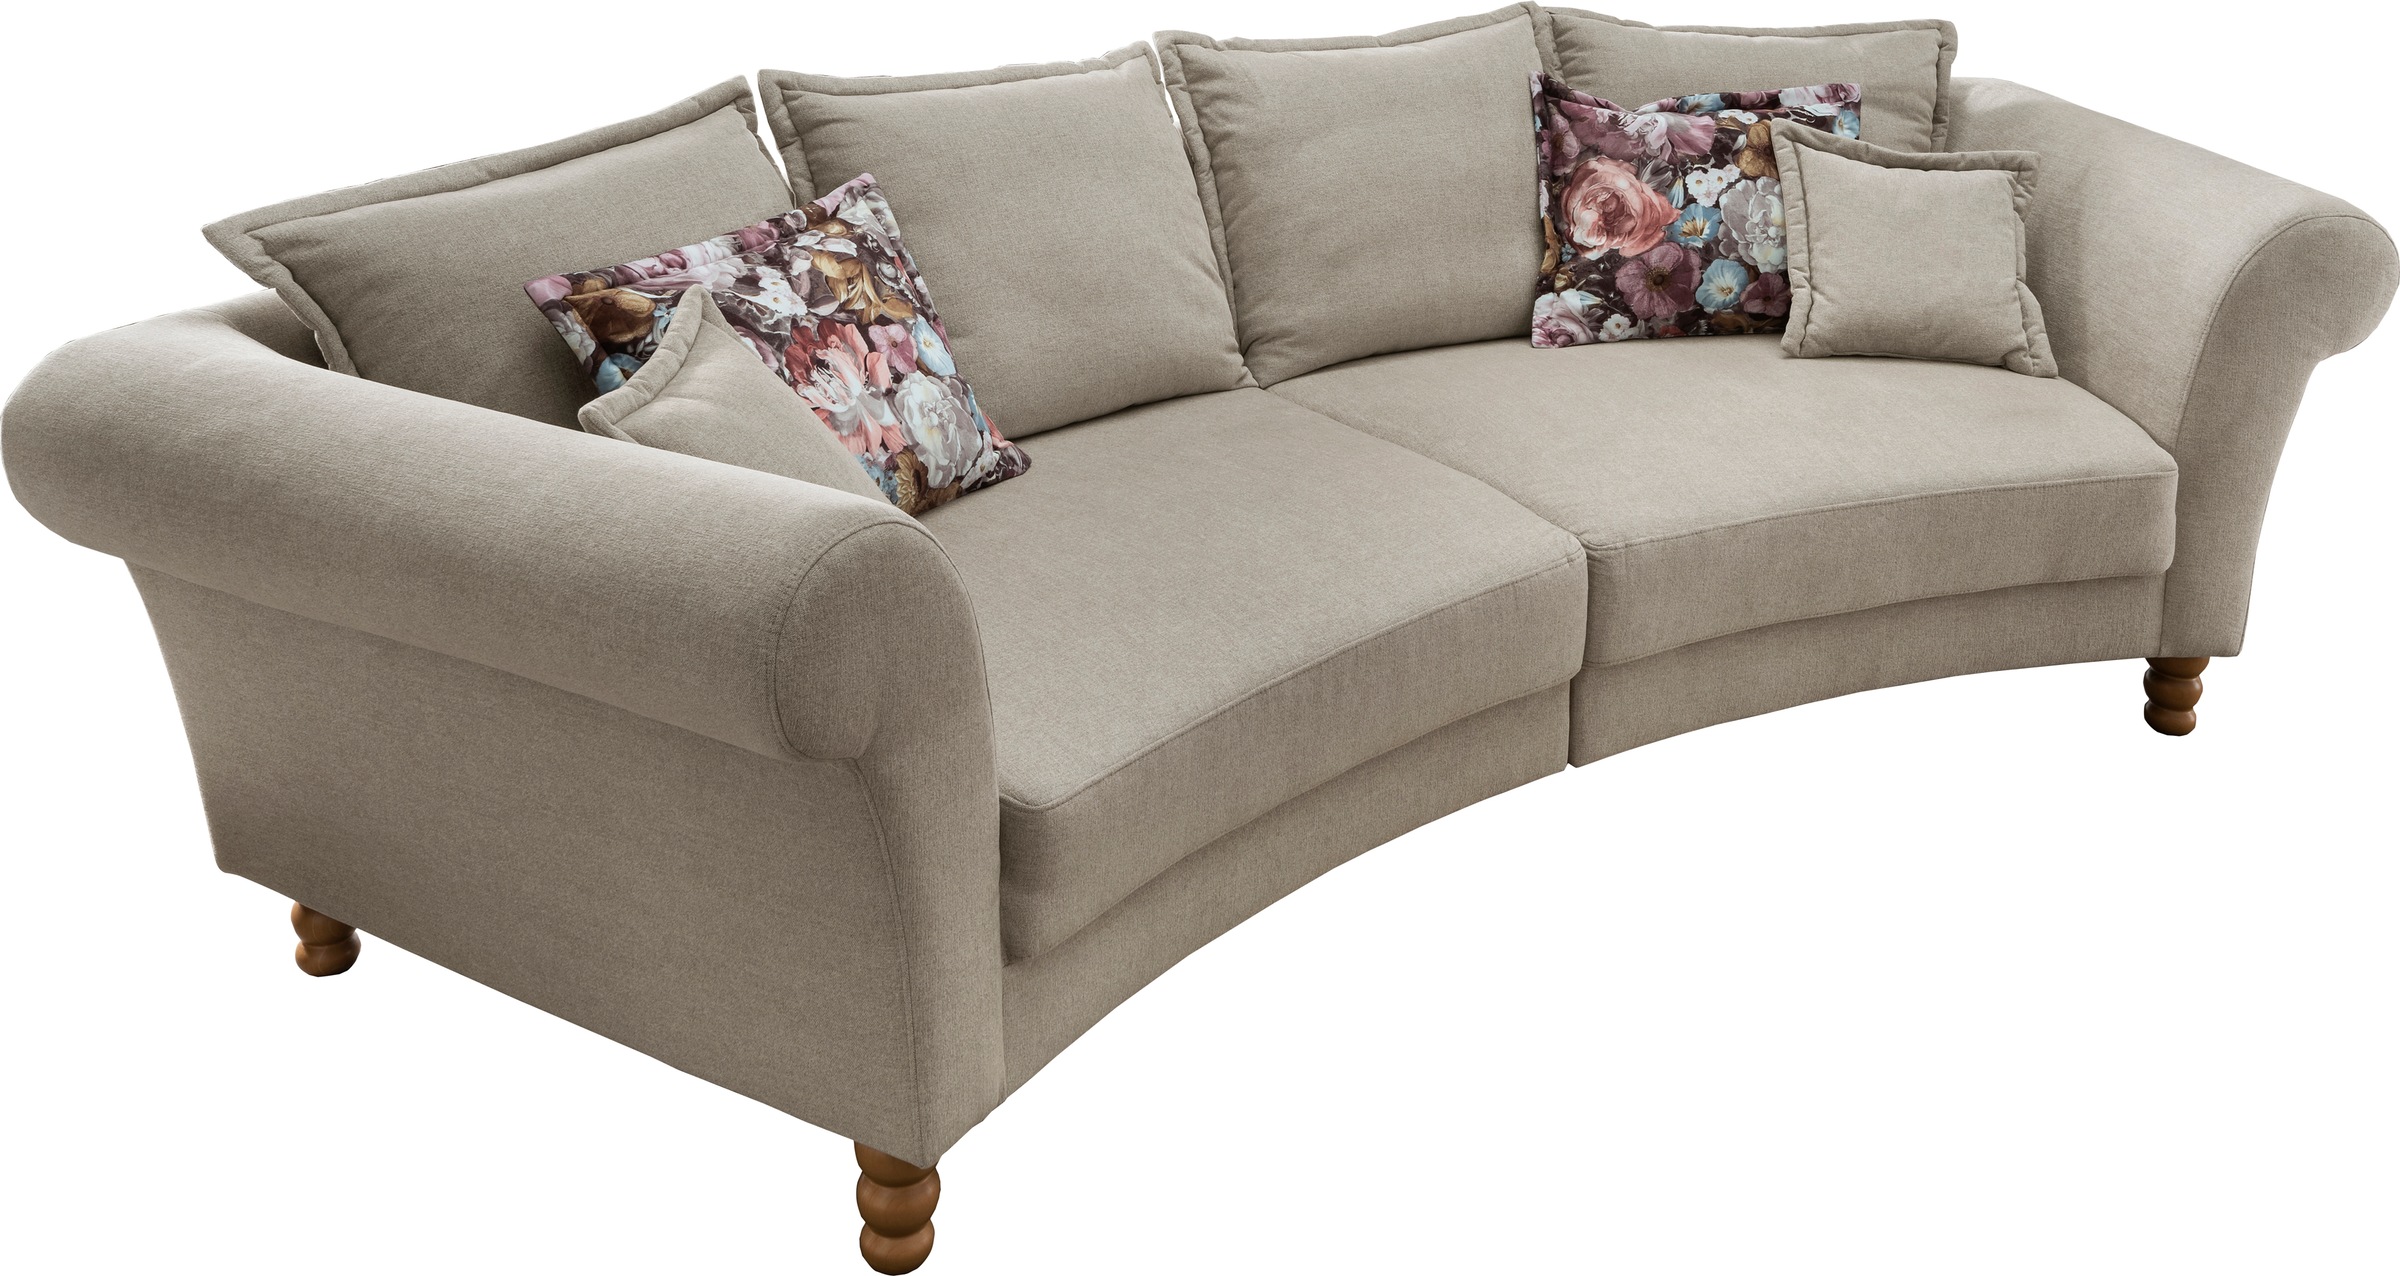 Home affaire Big-Sofa »Tassilo« online bei OTTO